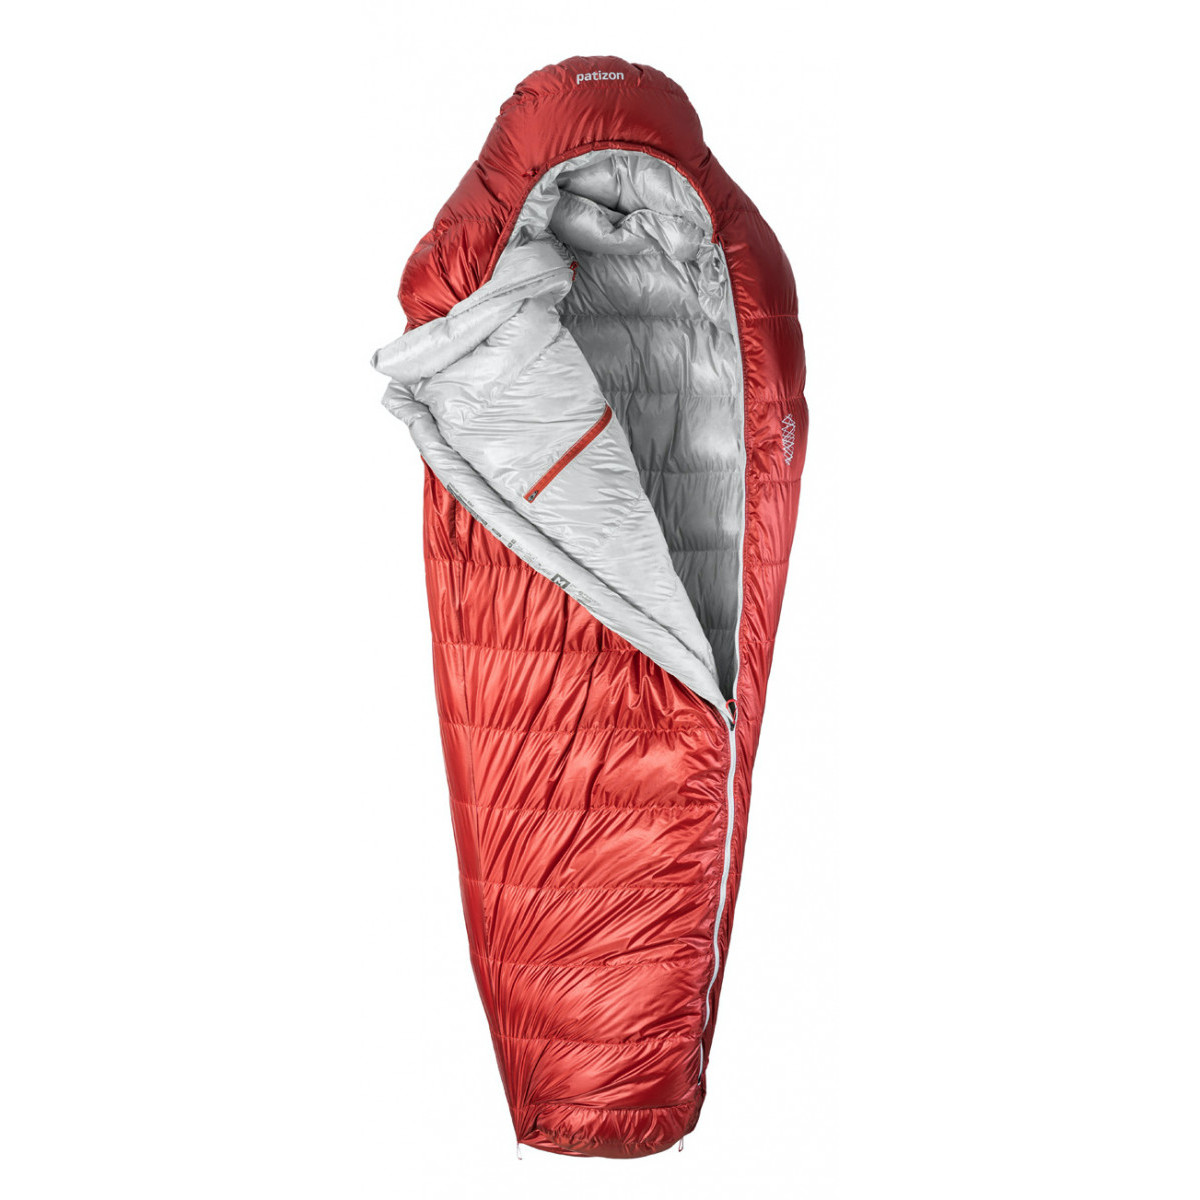 Péřový spacák Patizon DPRO 890 S (156-170 cm) Zip: Levý / Barva: červená/stříbrná